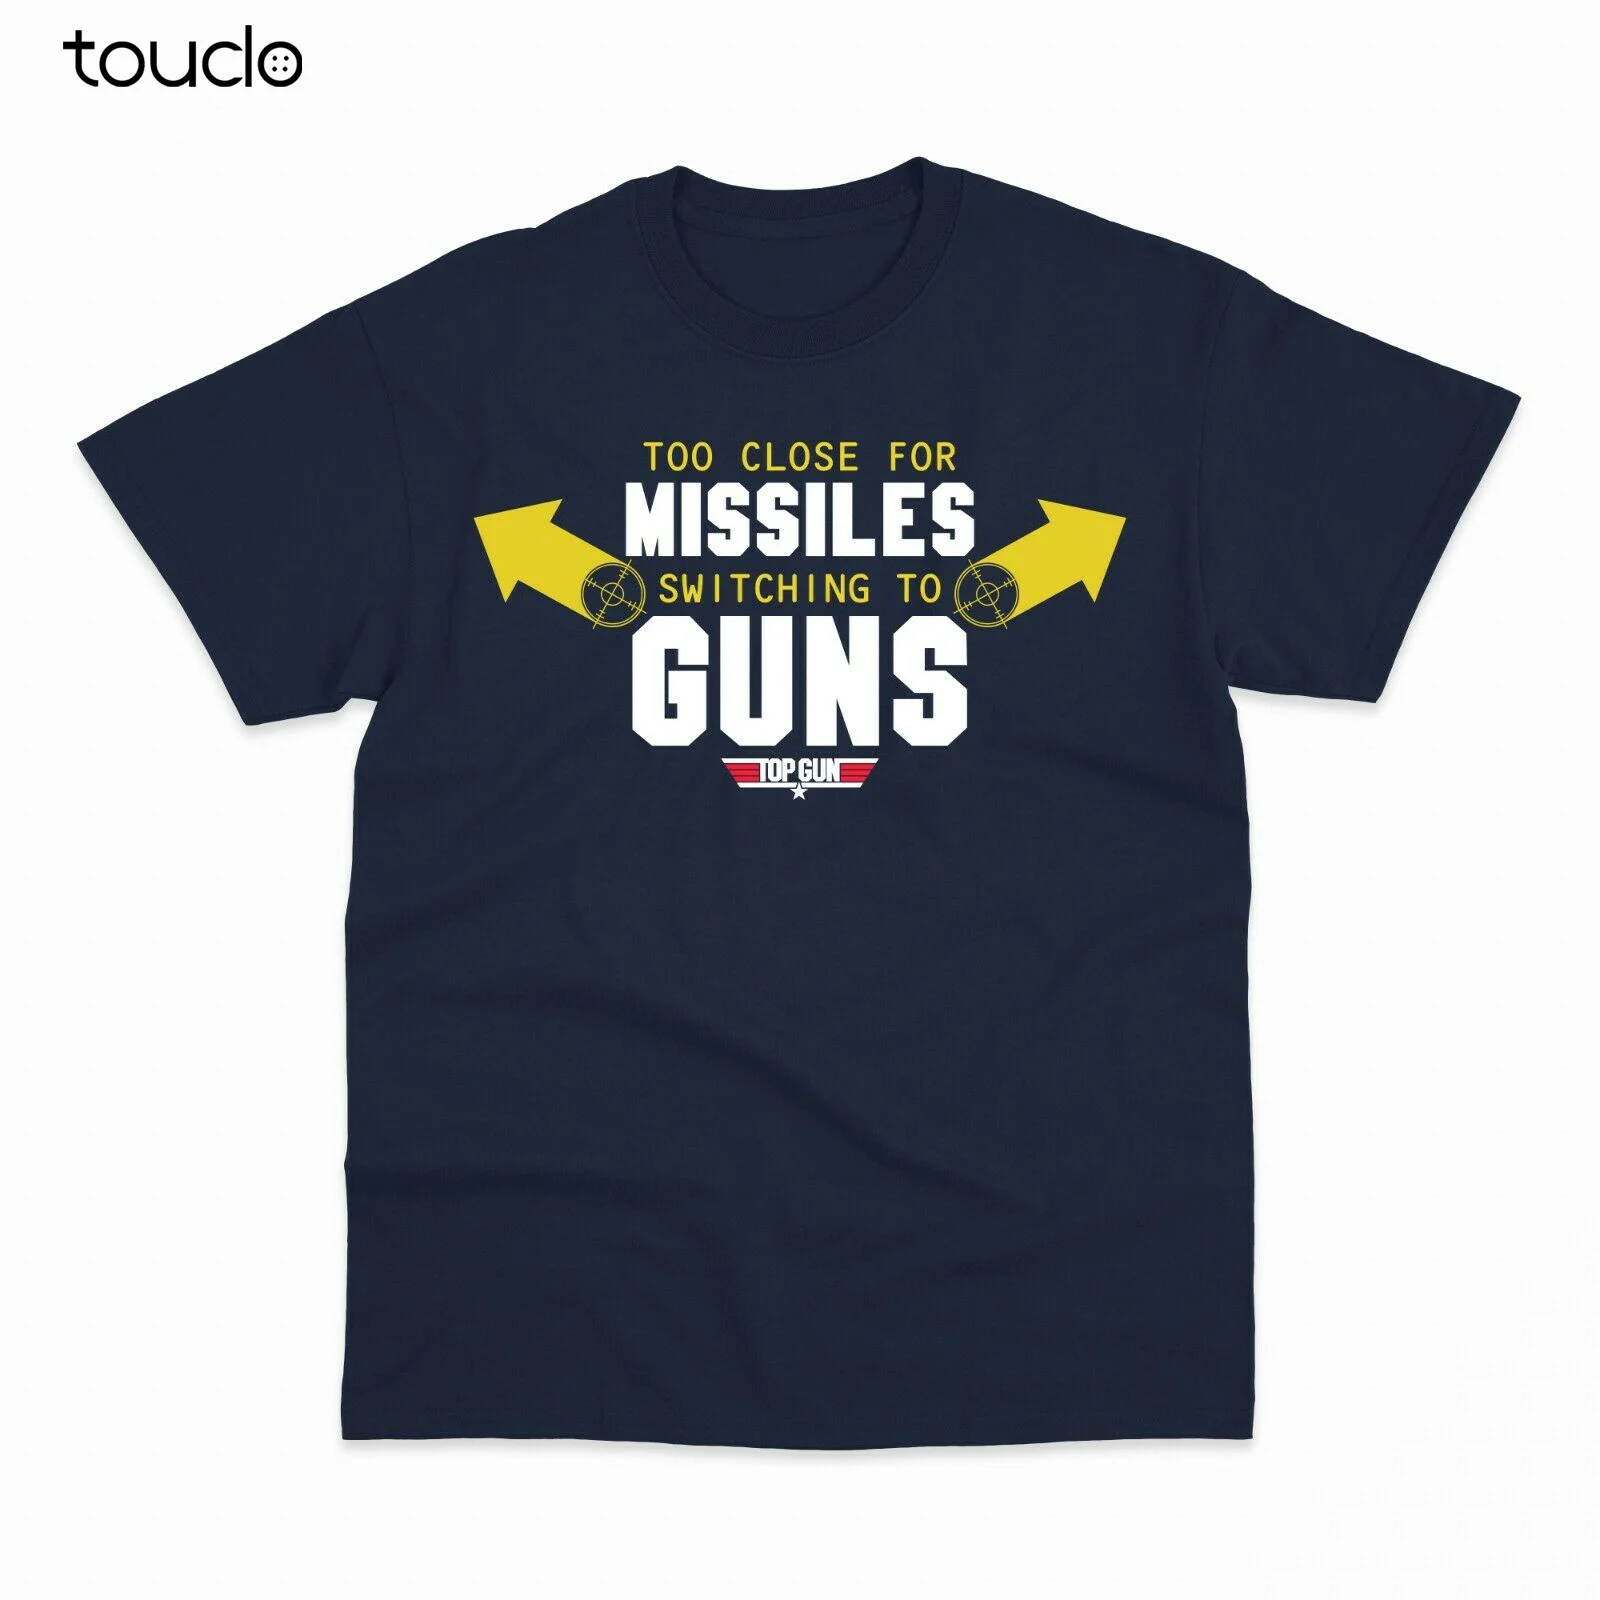 Футболка с логотипом Top Gun Maverick Goose Viper Xs-5Xl, оригинальные подарочные забавные футболки с коротким рукавом, креативная забавная футболка